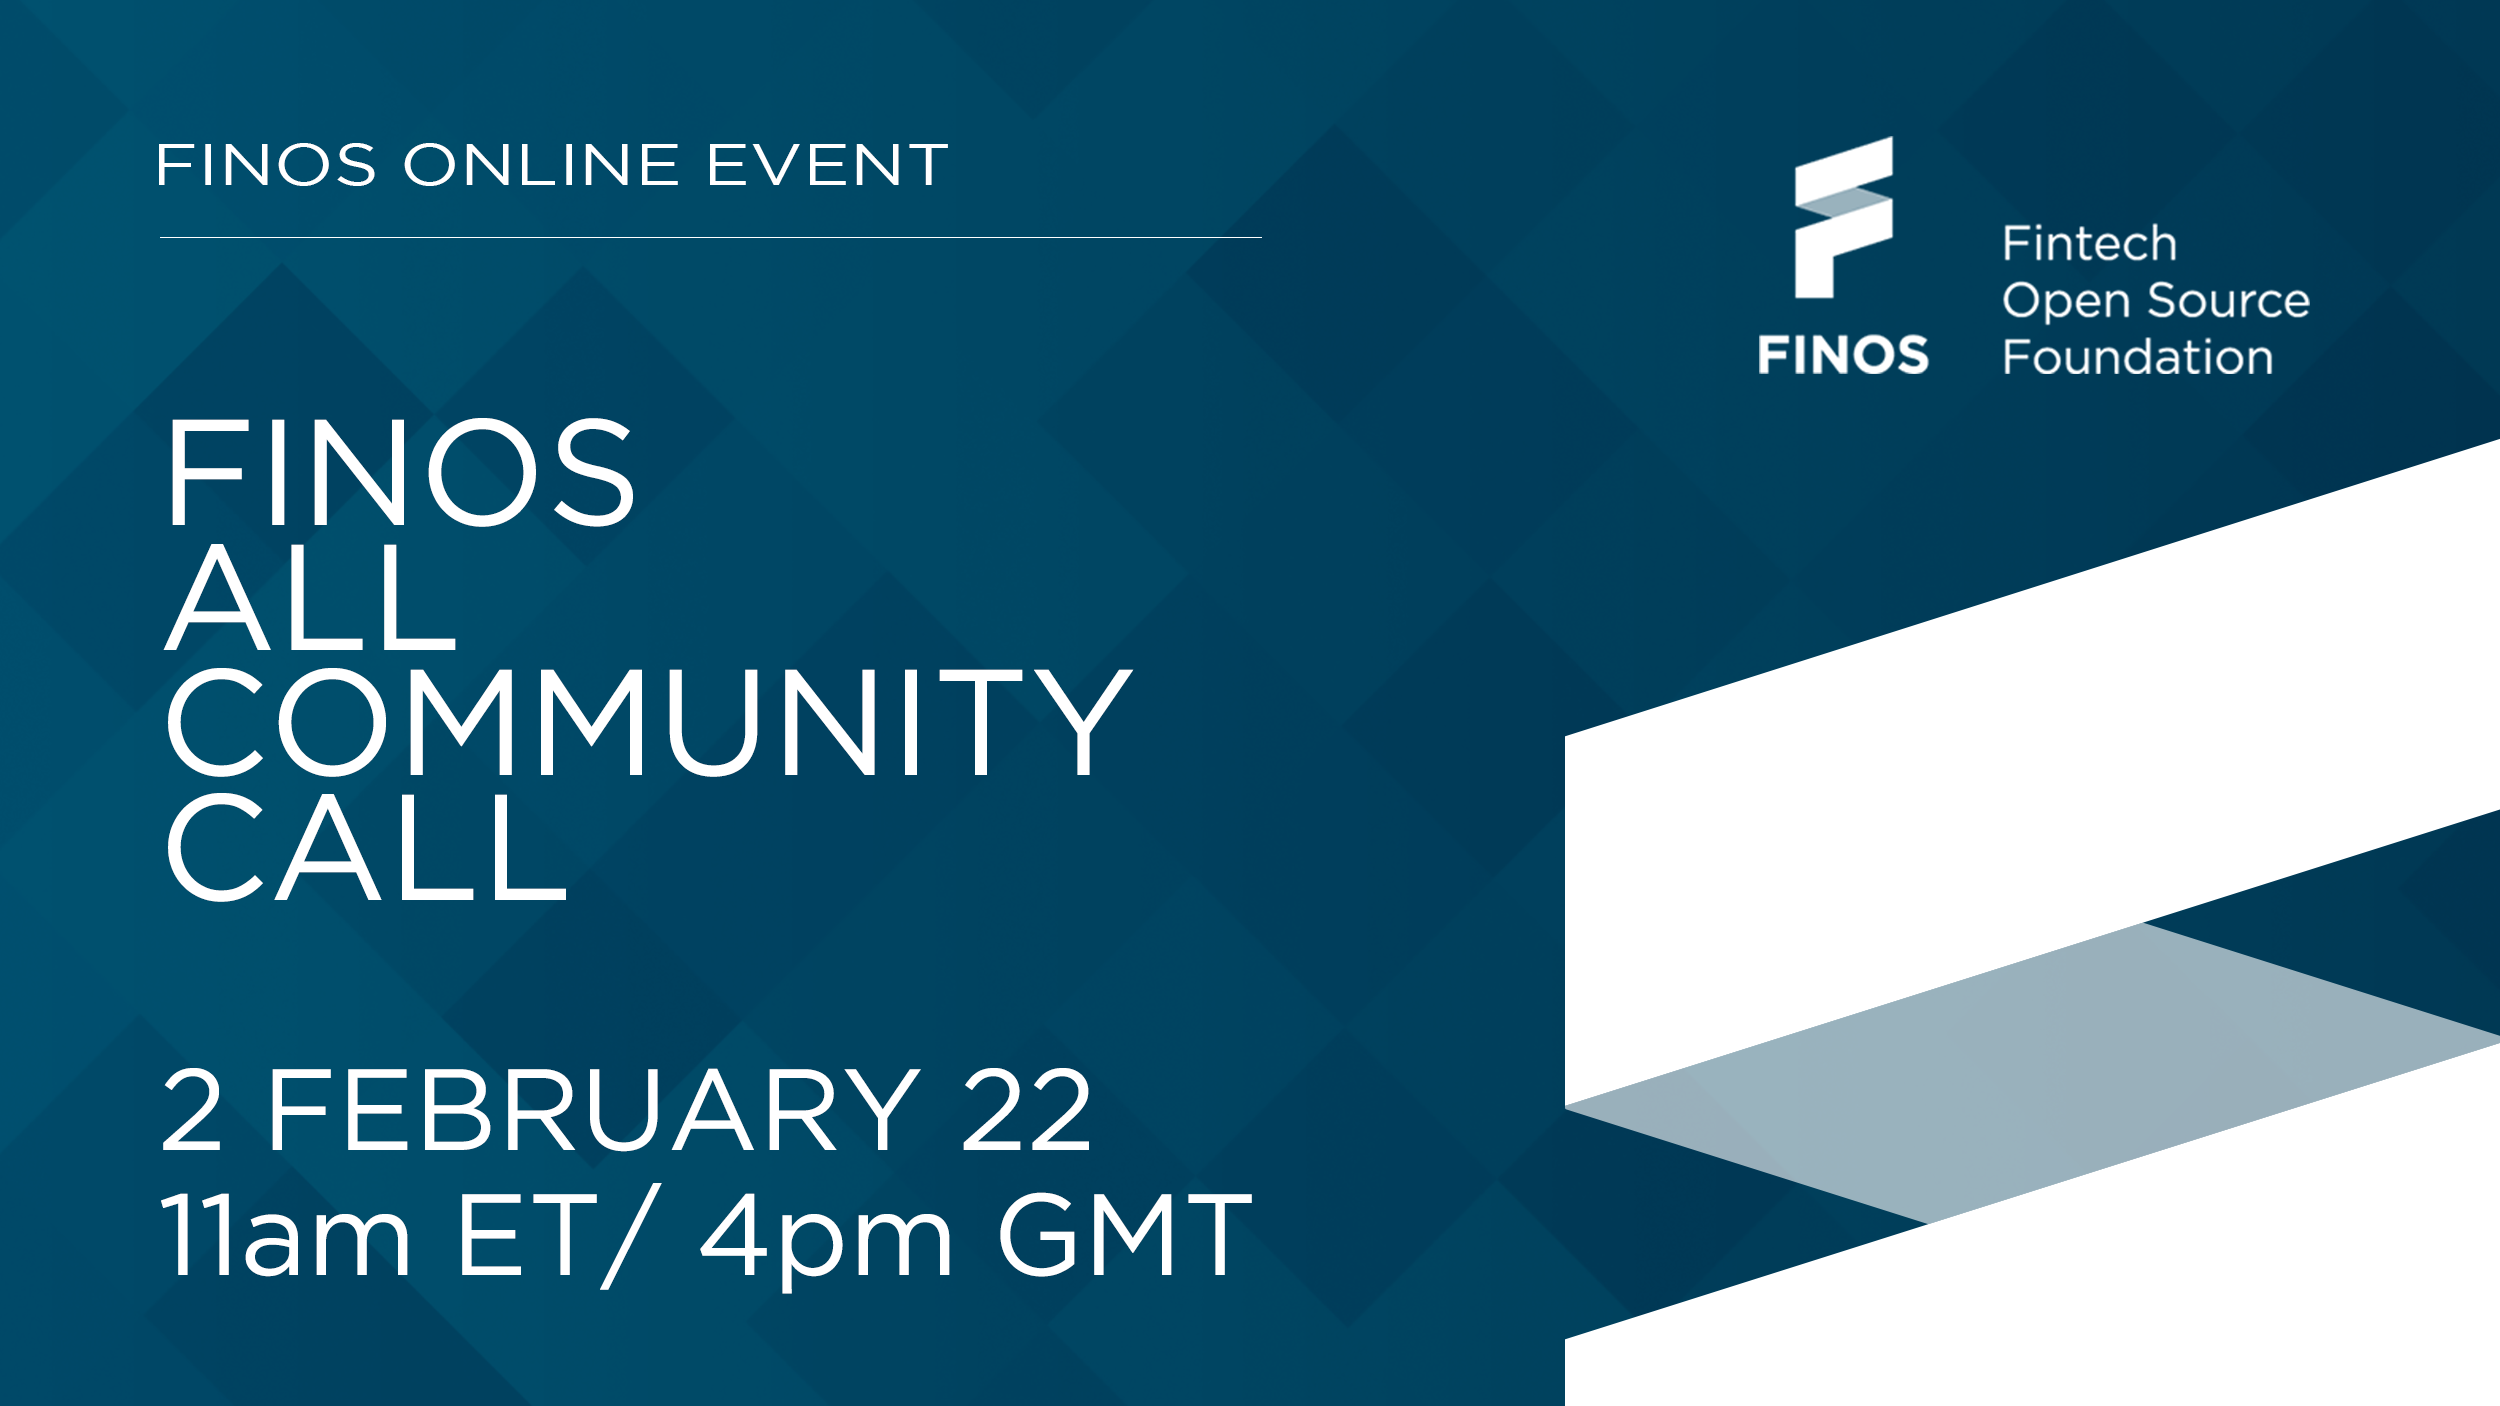 FINOS-all-community-call-q1-2022-social